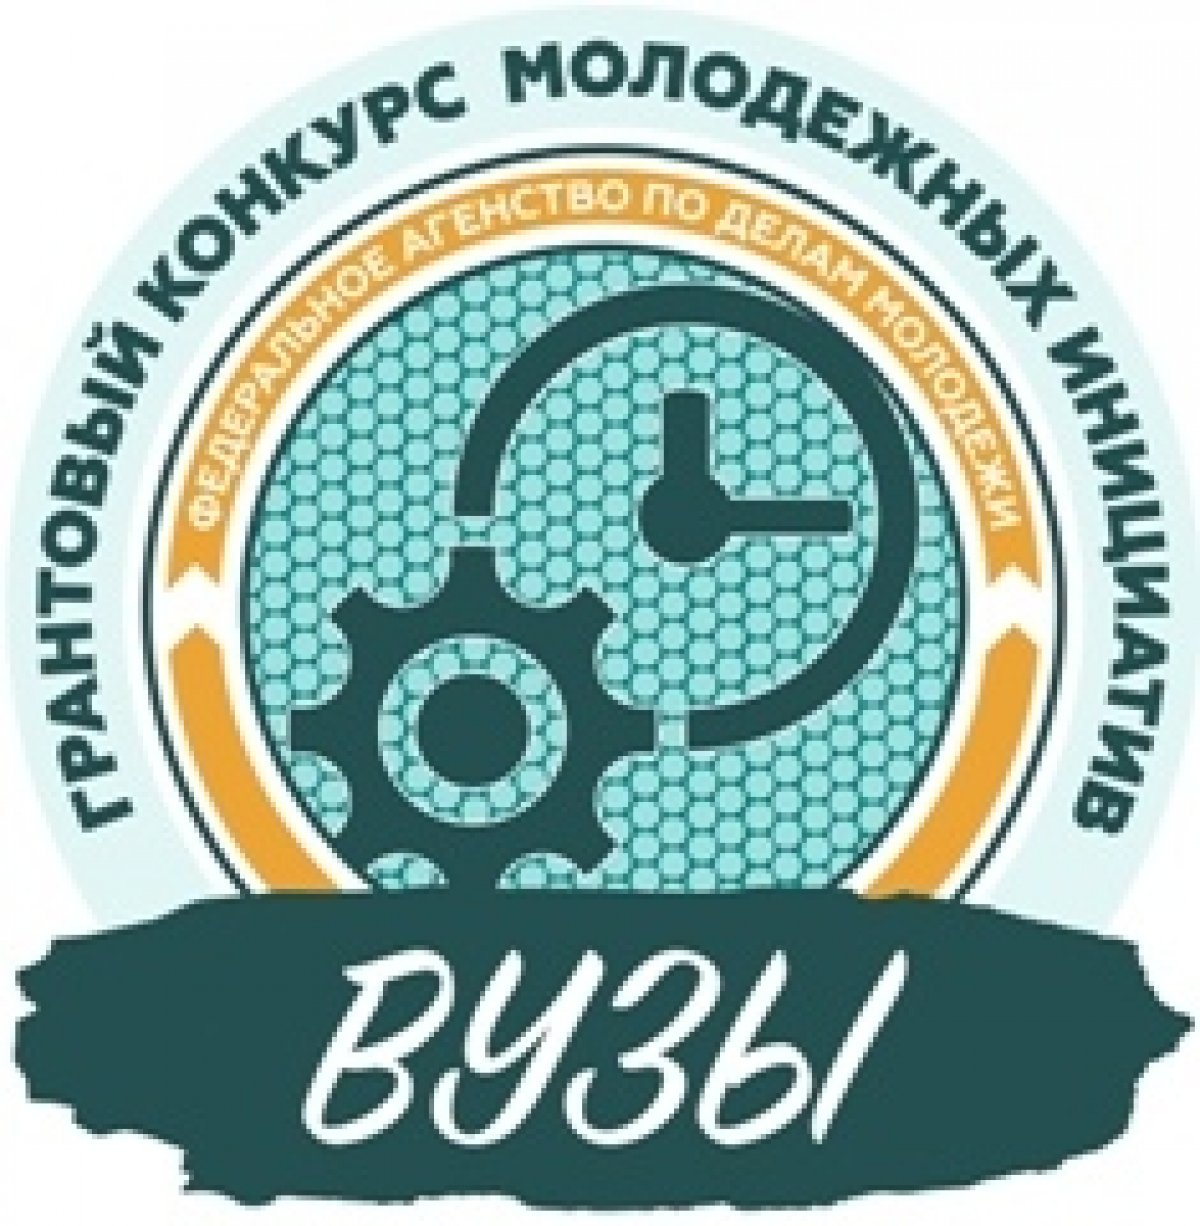 МСПИ – победитель Всероссийского конкурса молодежных проектов среди образовательных организаций высшего образования